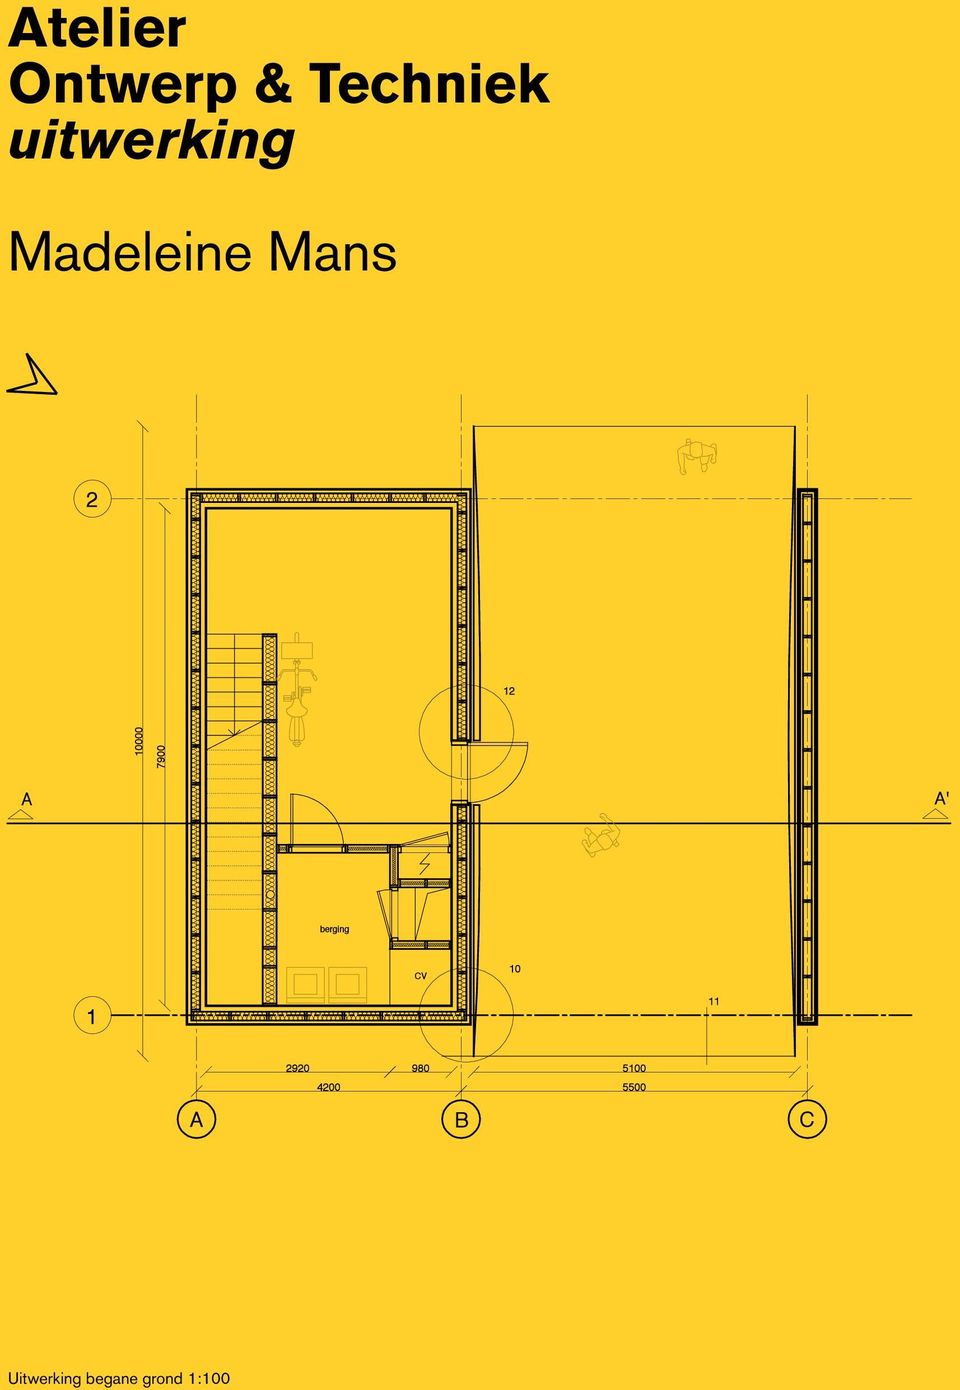 Madeleine Mans